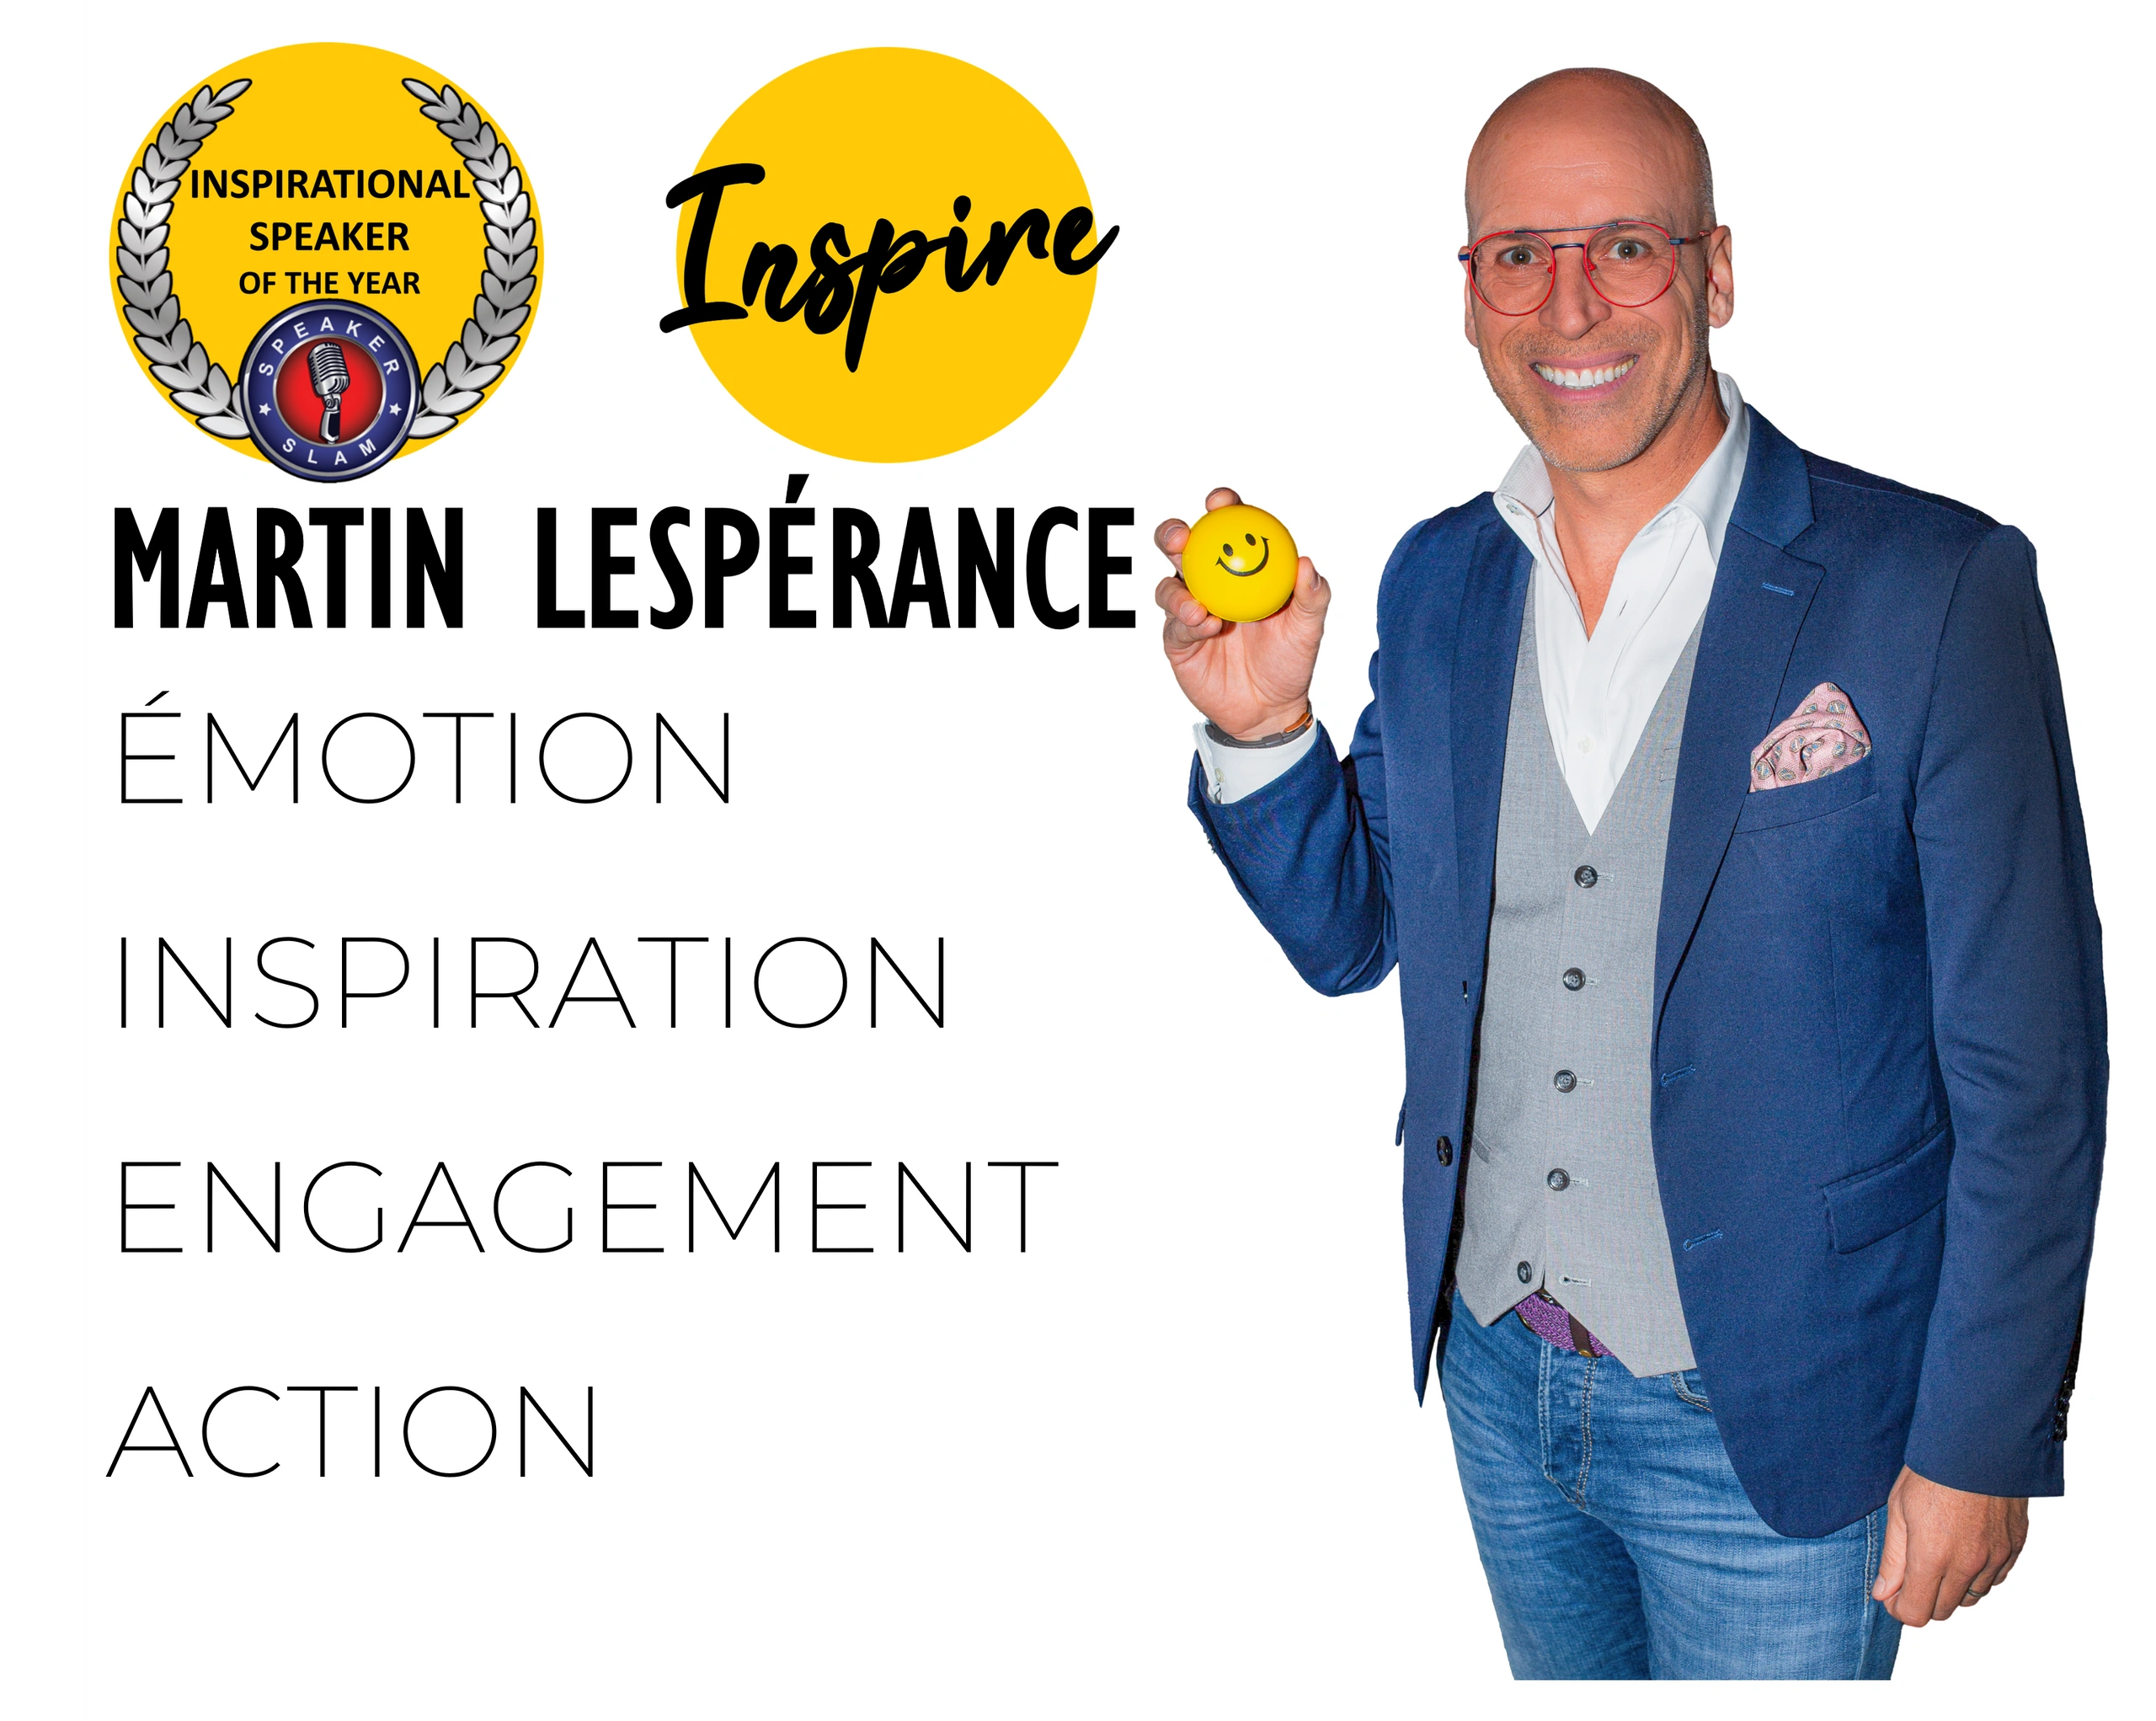 Martin Lesperance professional speaker conférencier motivation leadership change stress management